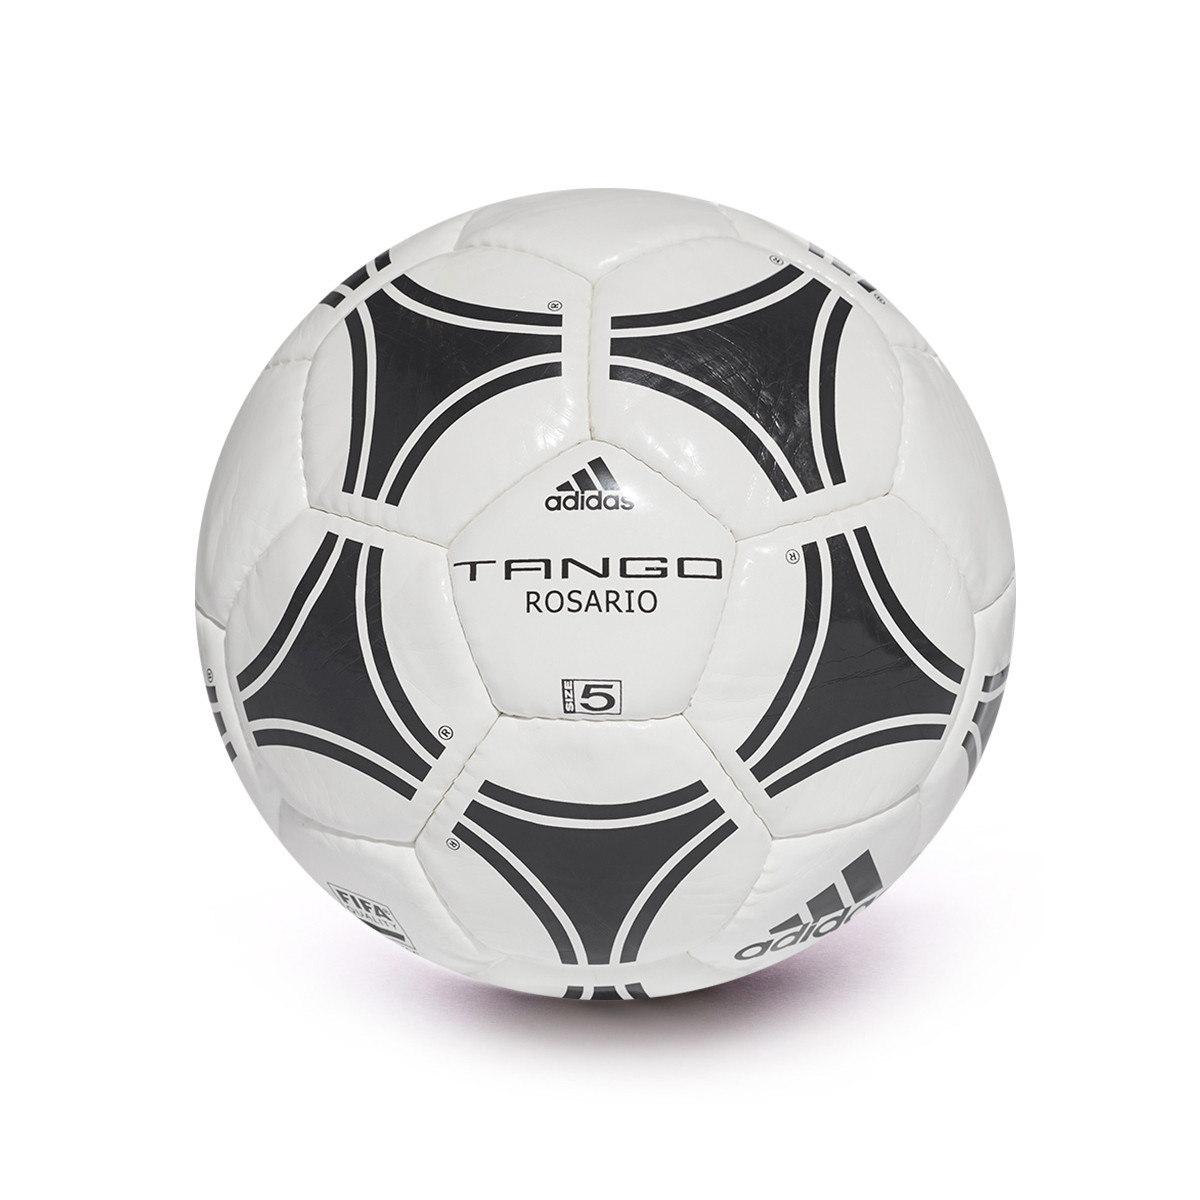 adidas tango rosario soccer ball